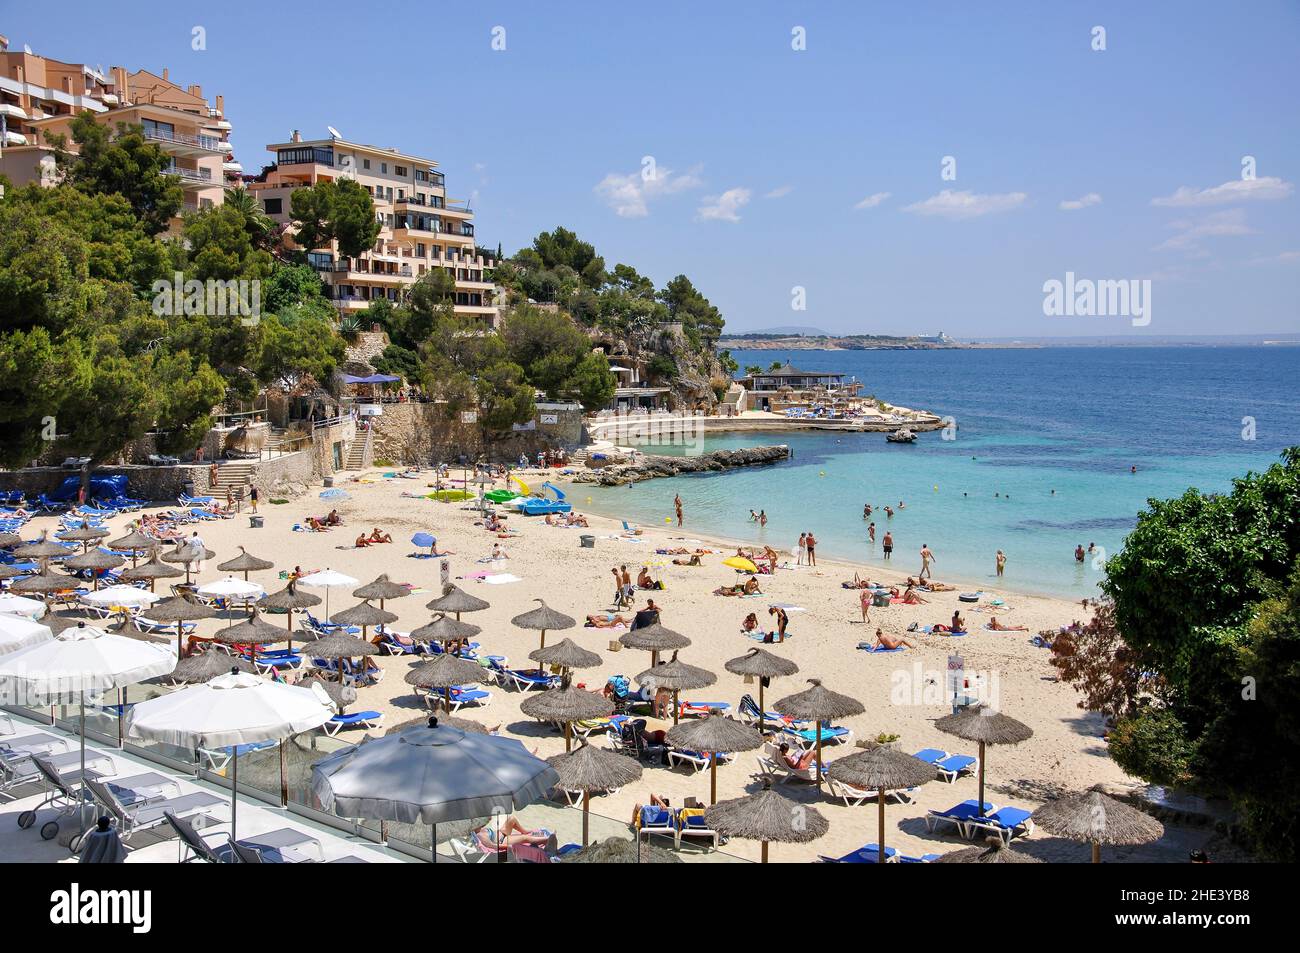 Beach view, Illetes, Palma Municipality, Majorca (Mallorca), Balearic Islands, Spain Stock Photo